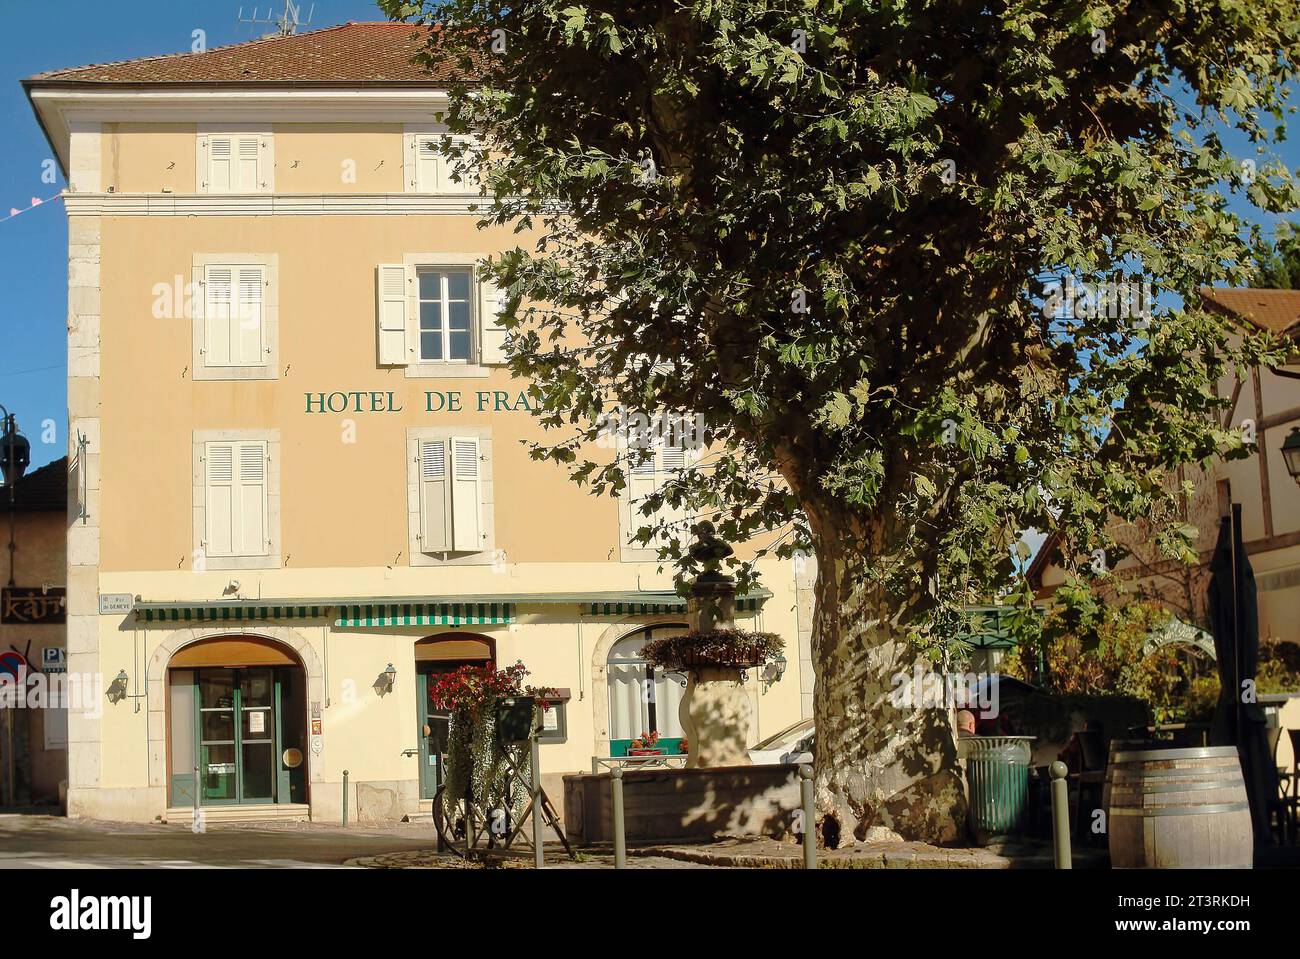 Vue de l'Hôtel France avec une belle fontaine antique et grand arbre vieux à Ferney-Voltaire, France. Ferney-Voltaire une ville et commune à Fran Banque D'Images